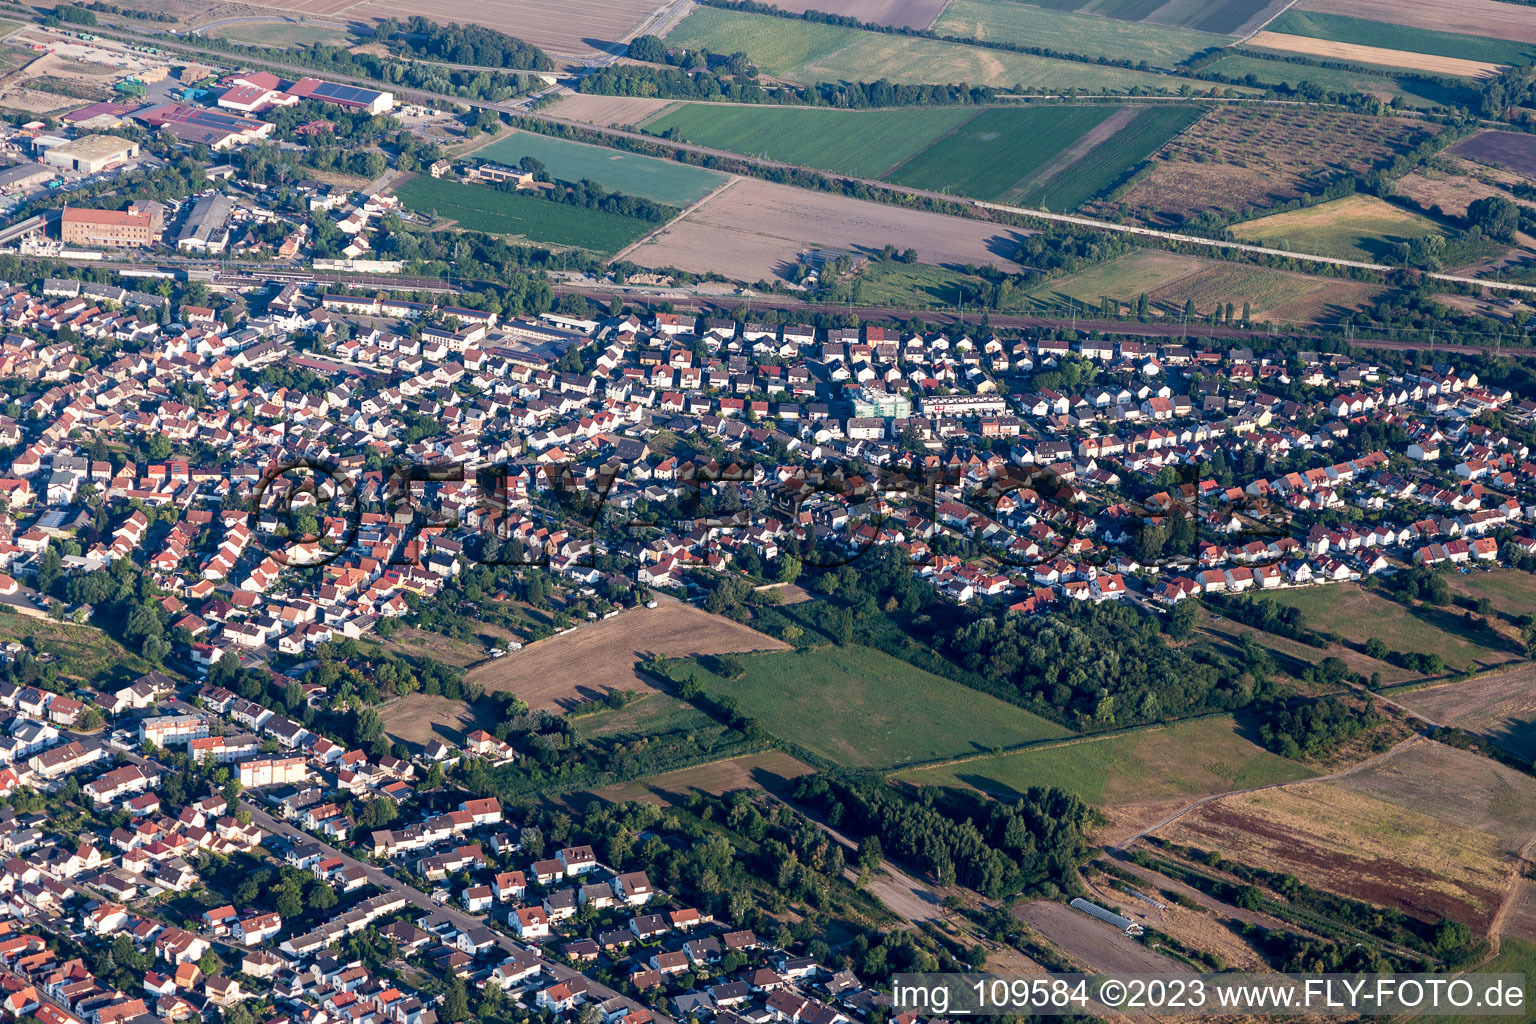 Schifferstadt im Bundesland Rheinland-Pfalz, Deutschland aus der Luft betrachtet